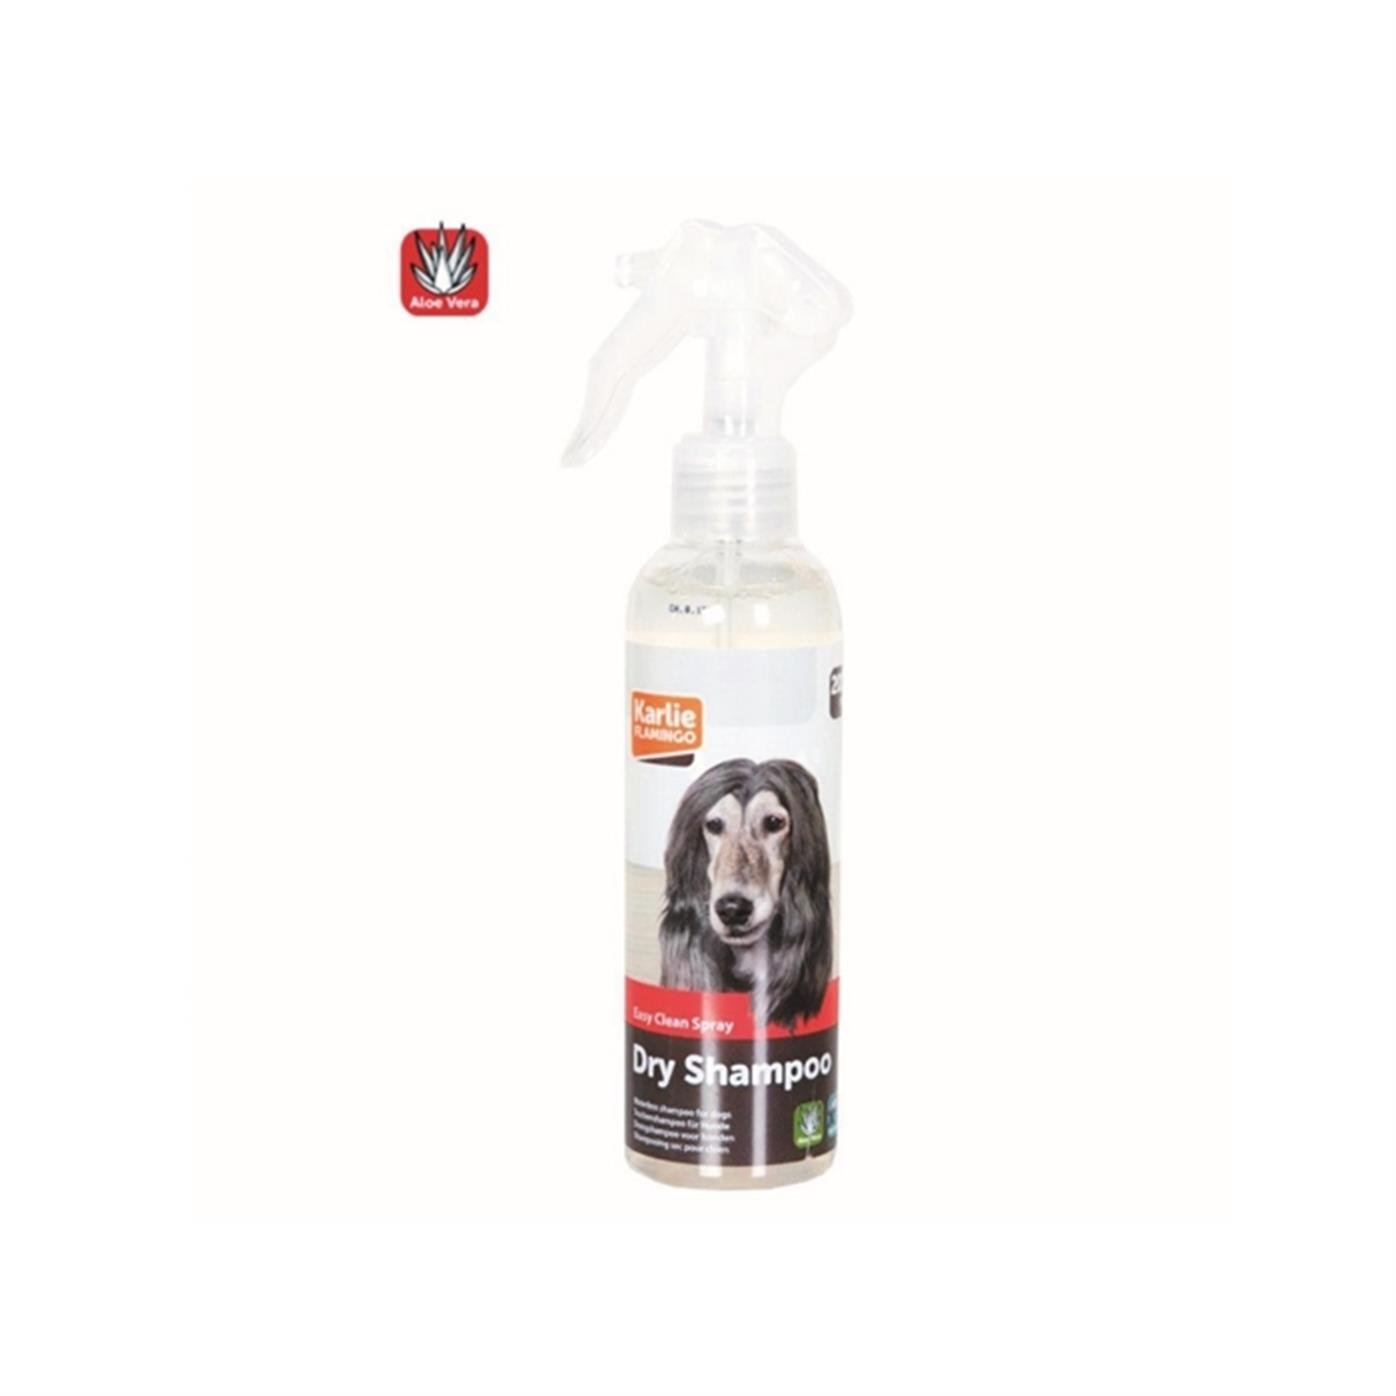 Karlie Kuru Köpek Şampuanı 200ml - 5415245438900 - 555-1033329 - PET GROSS  ® | Evcil Hayvanlarınız İçin Her Şey PetGross'ta - Karlie